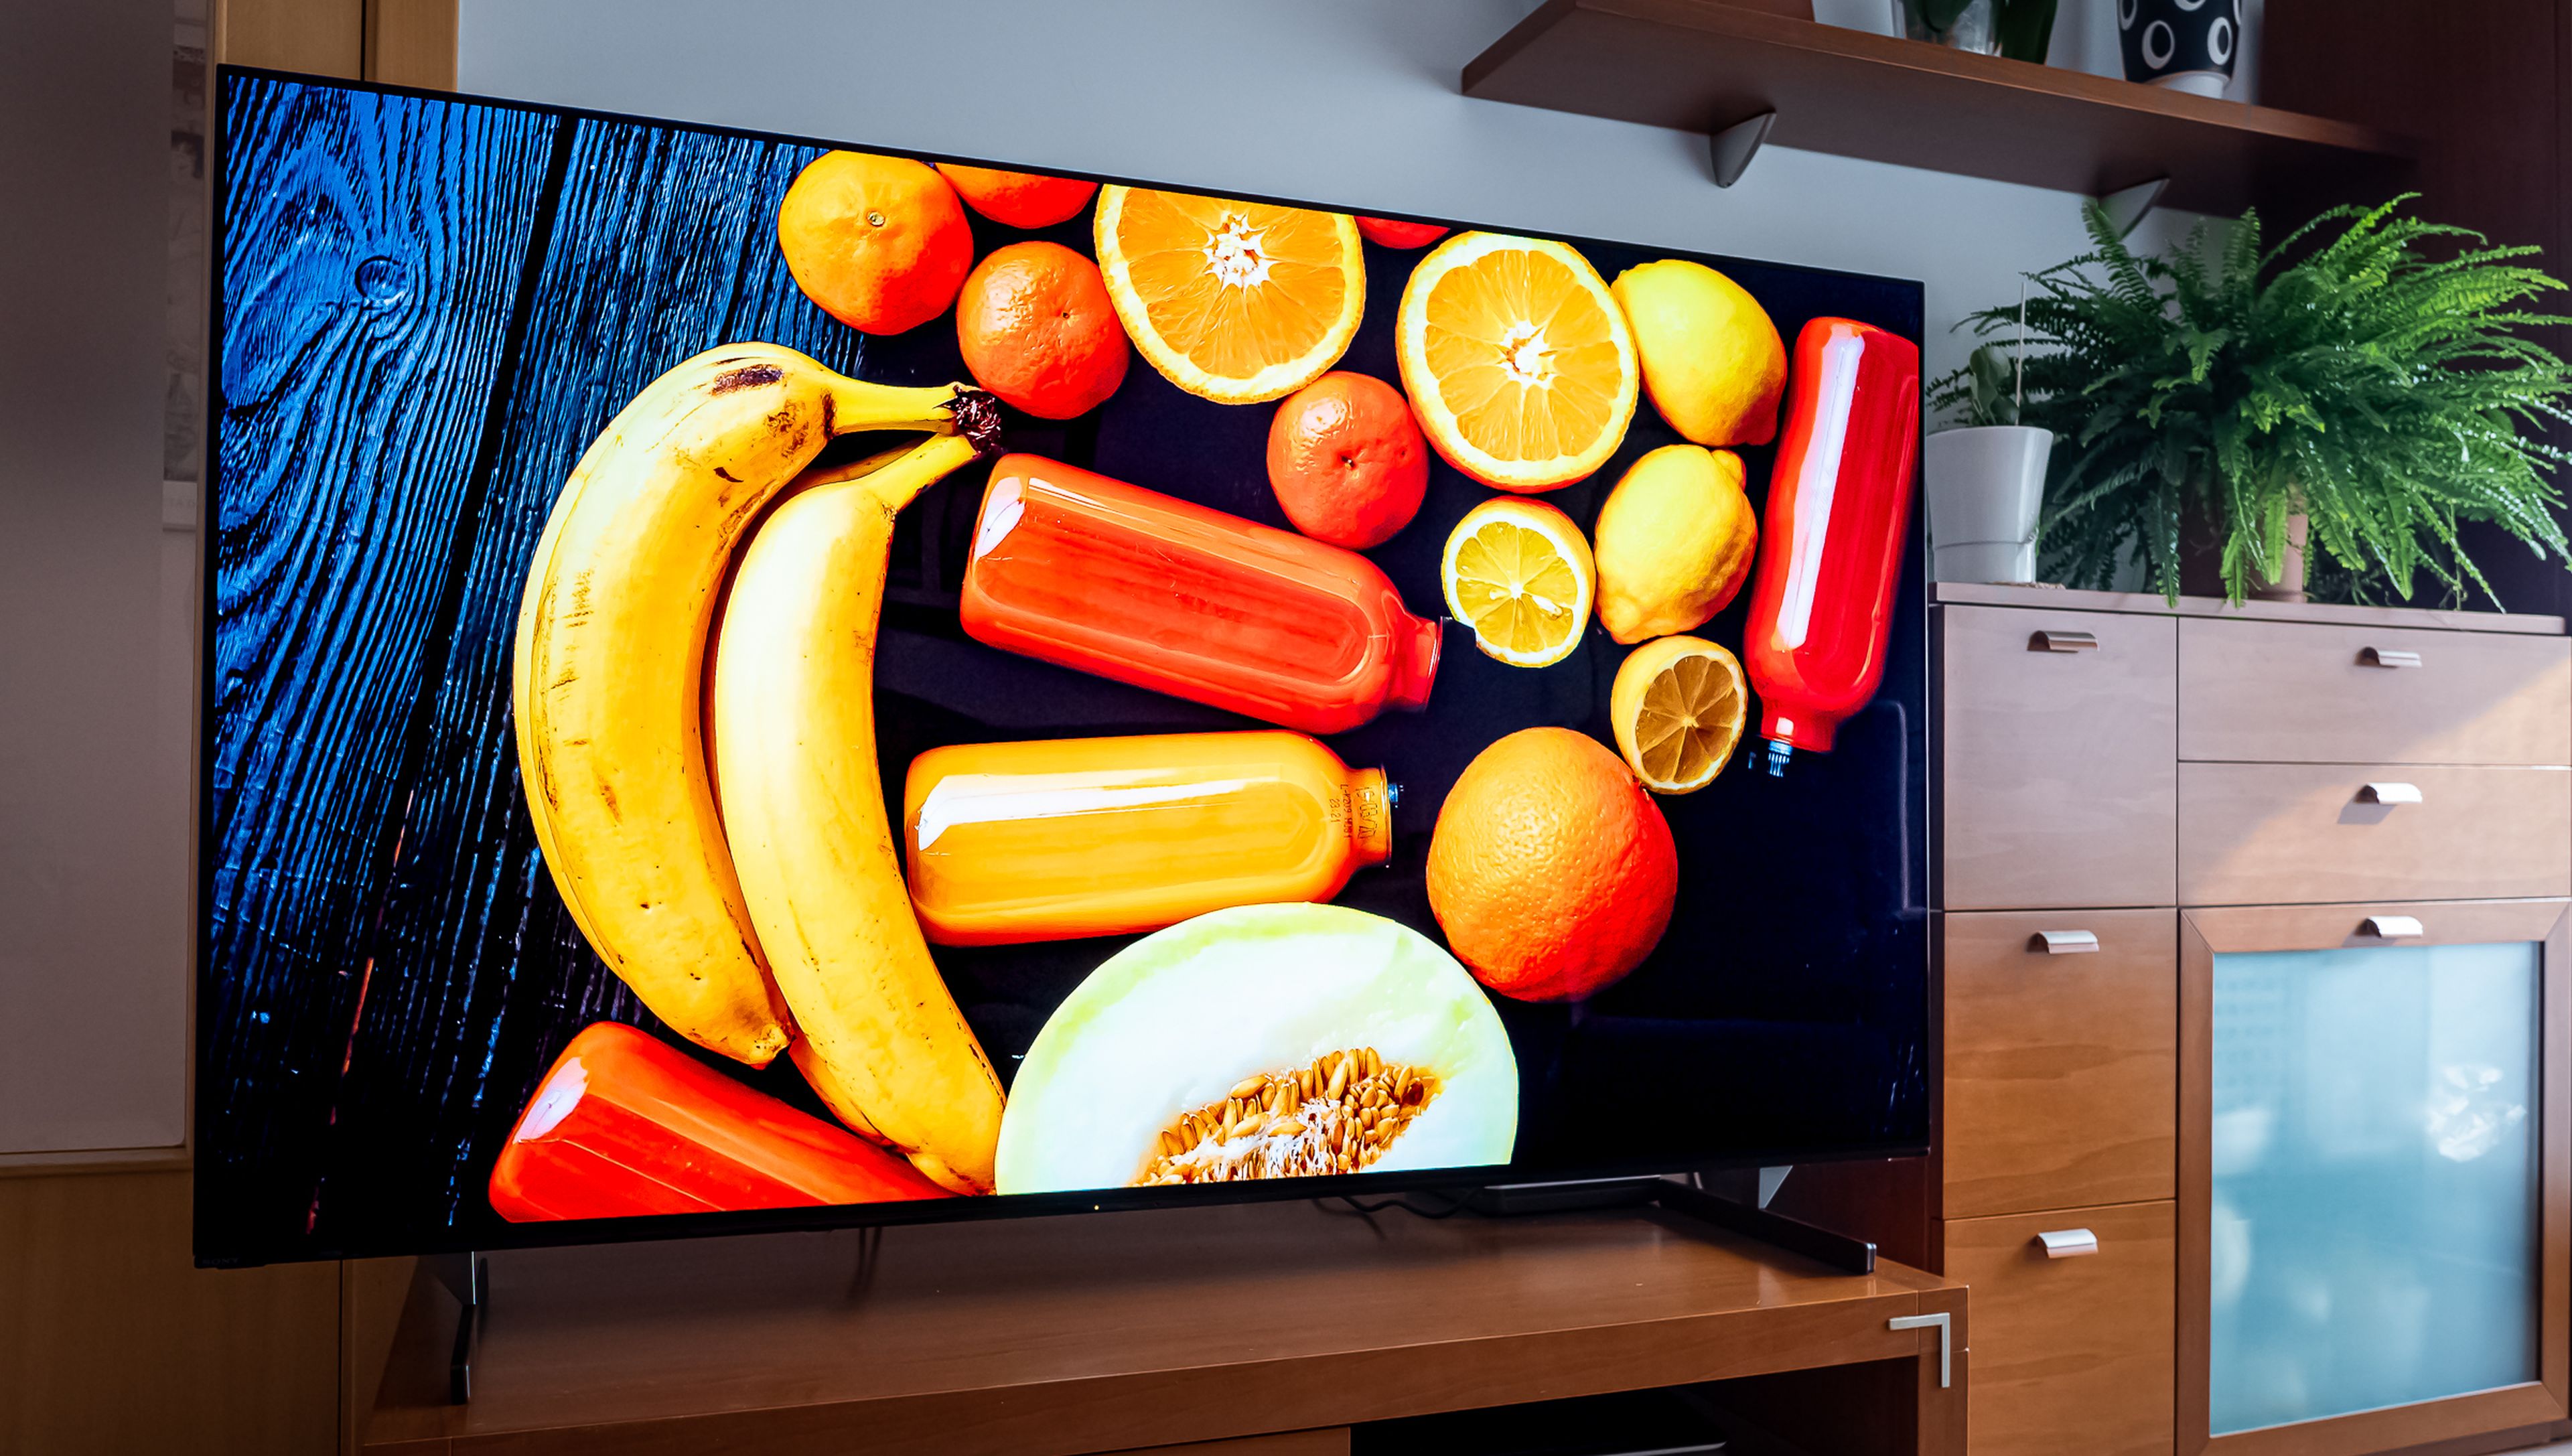 Disfruta de este Smart TV 4K de Sony de 65 pulgadas, con panel